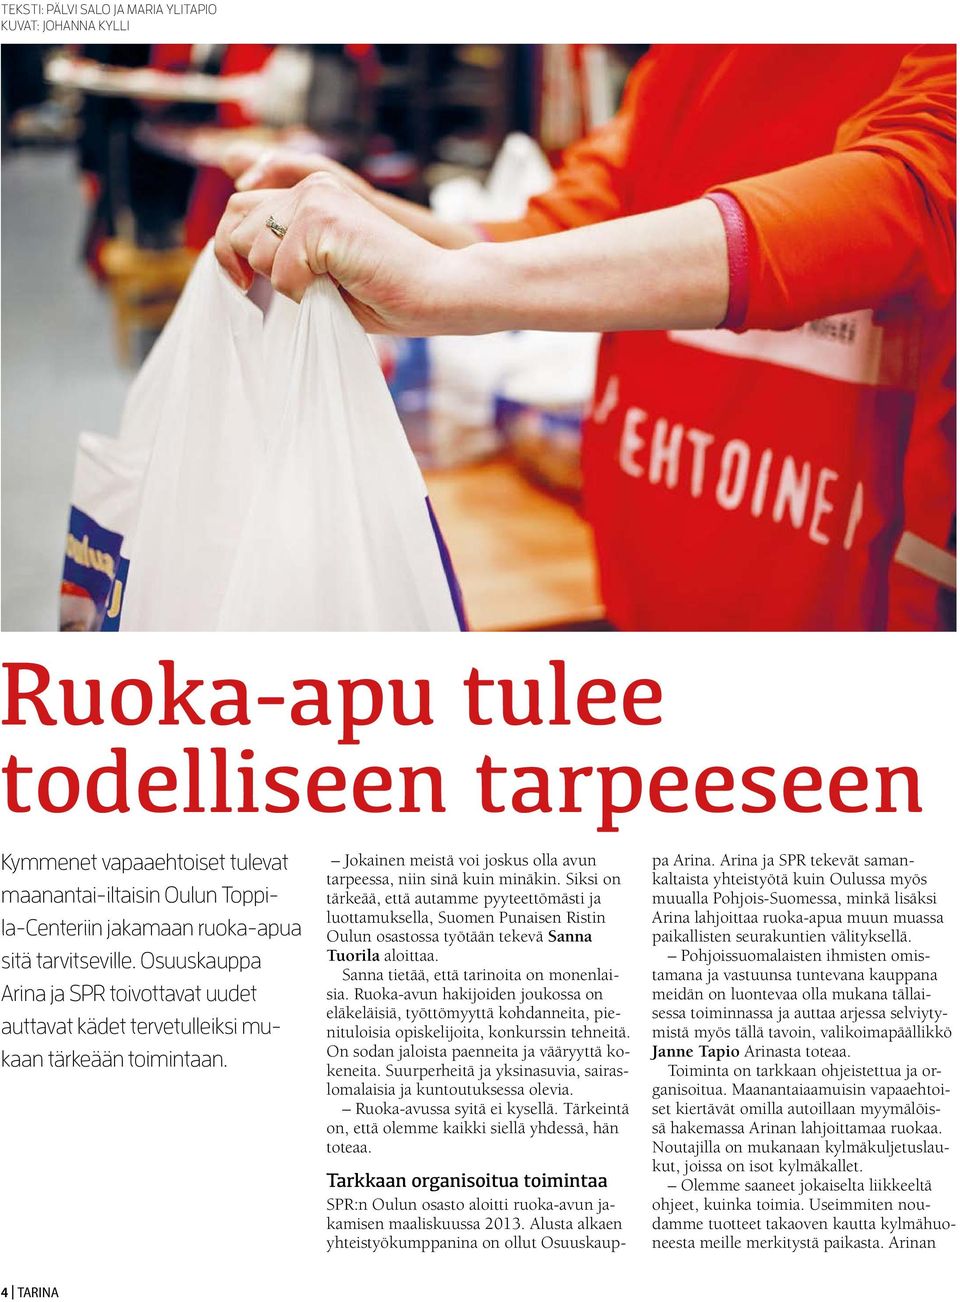 Siksi on tärkeää, että autamme pyyteettömästi ja luottamuksella, Suomen Punaisen Ristin Oulun osastossa työtään tekevä Sanna Tuorila aloittaa. Sanna tietää, että tarinoita on monenlaisia.